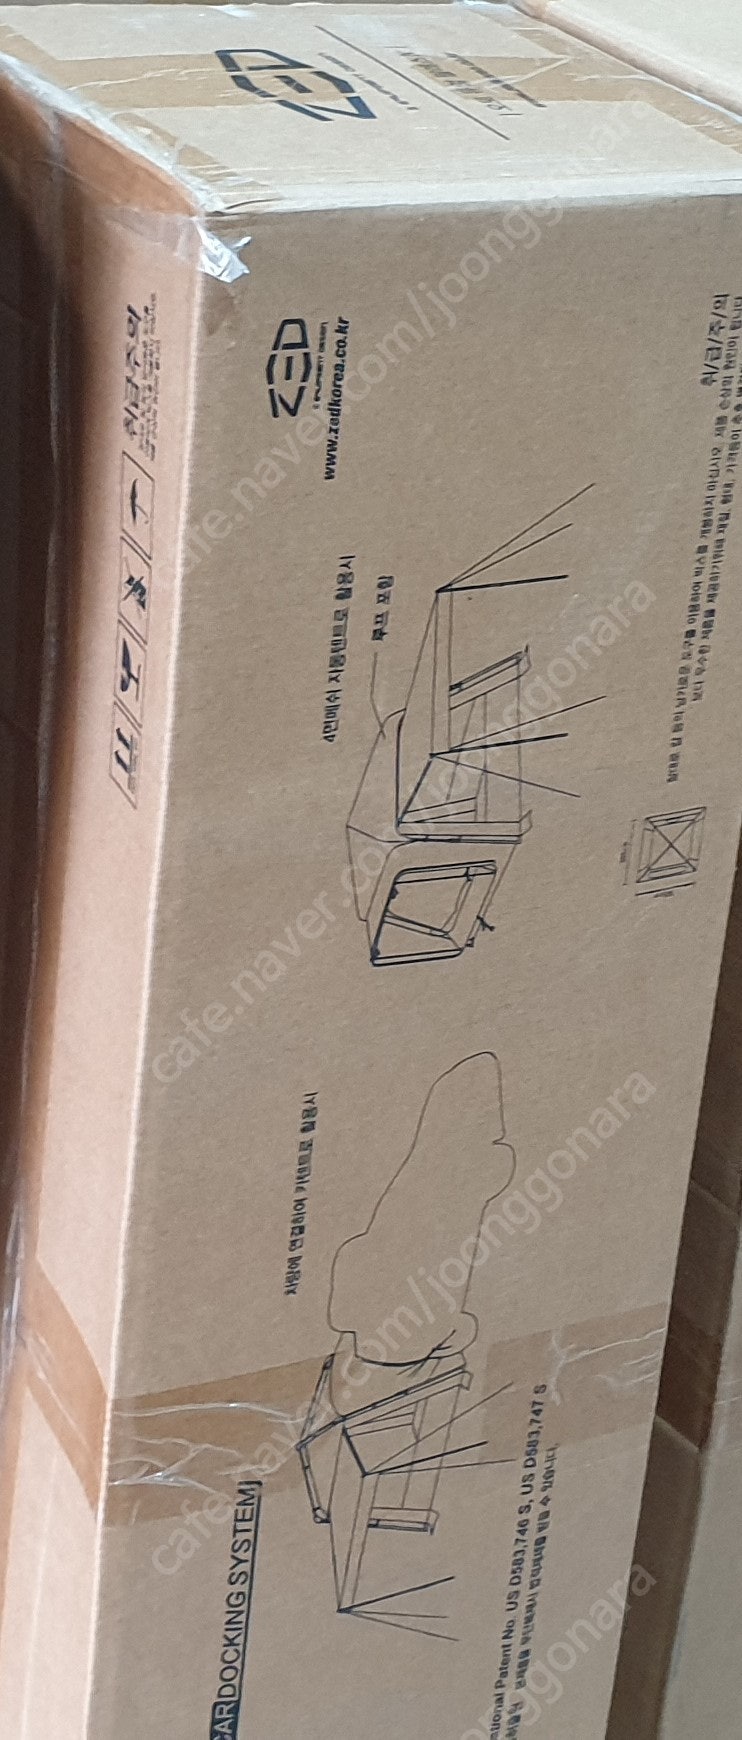 제드 오토듀얼팔레스3 미개봉 박스 판매